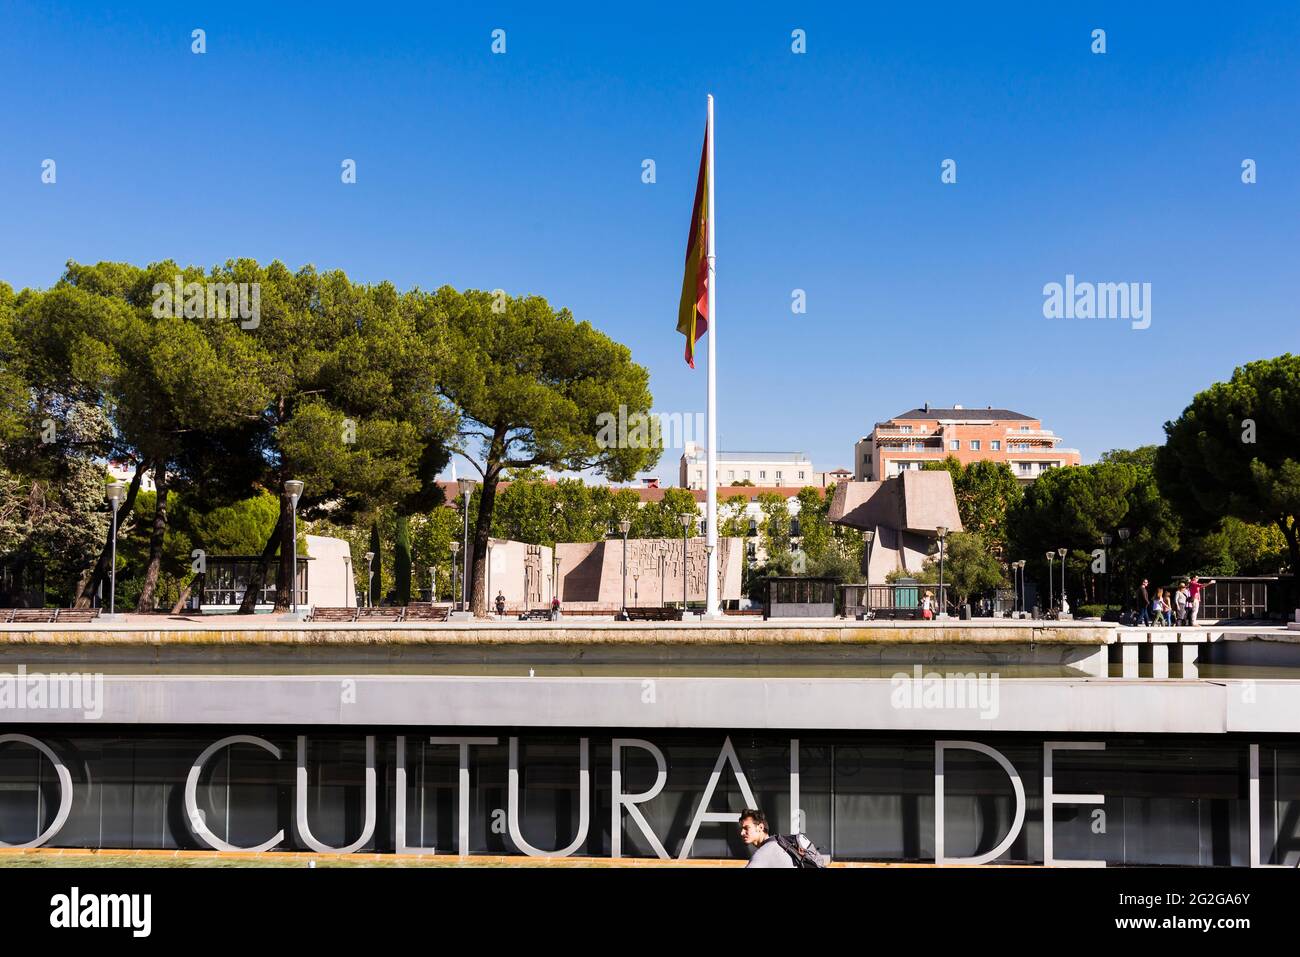 Teilansicht der Plaza de Colon mit dem Centro Cultural de la Villa de Madrid unten. Madrid, Comunidad de Madrid, Spanien, Europa Stockfoto